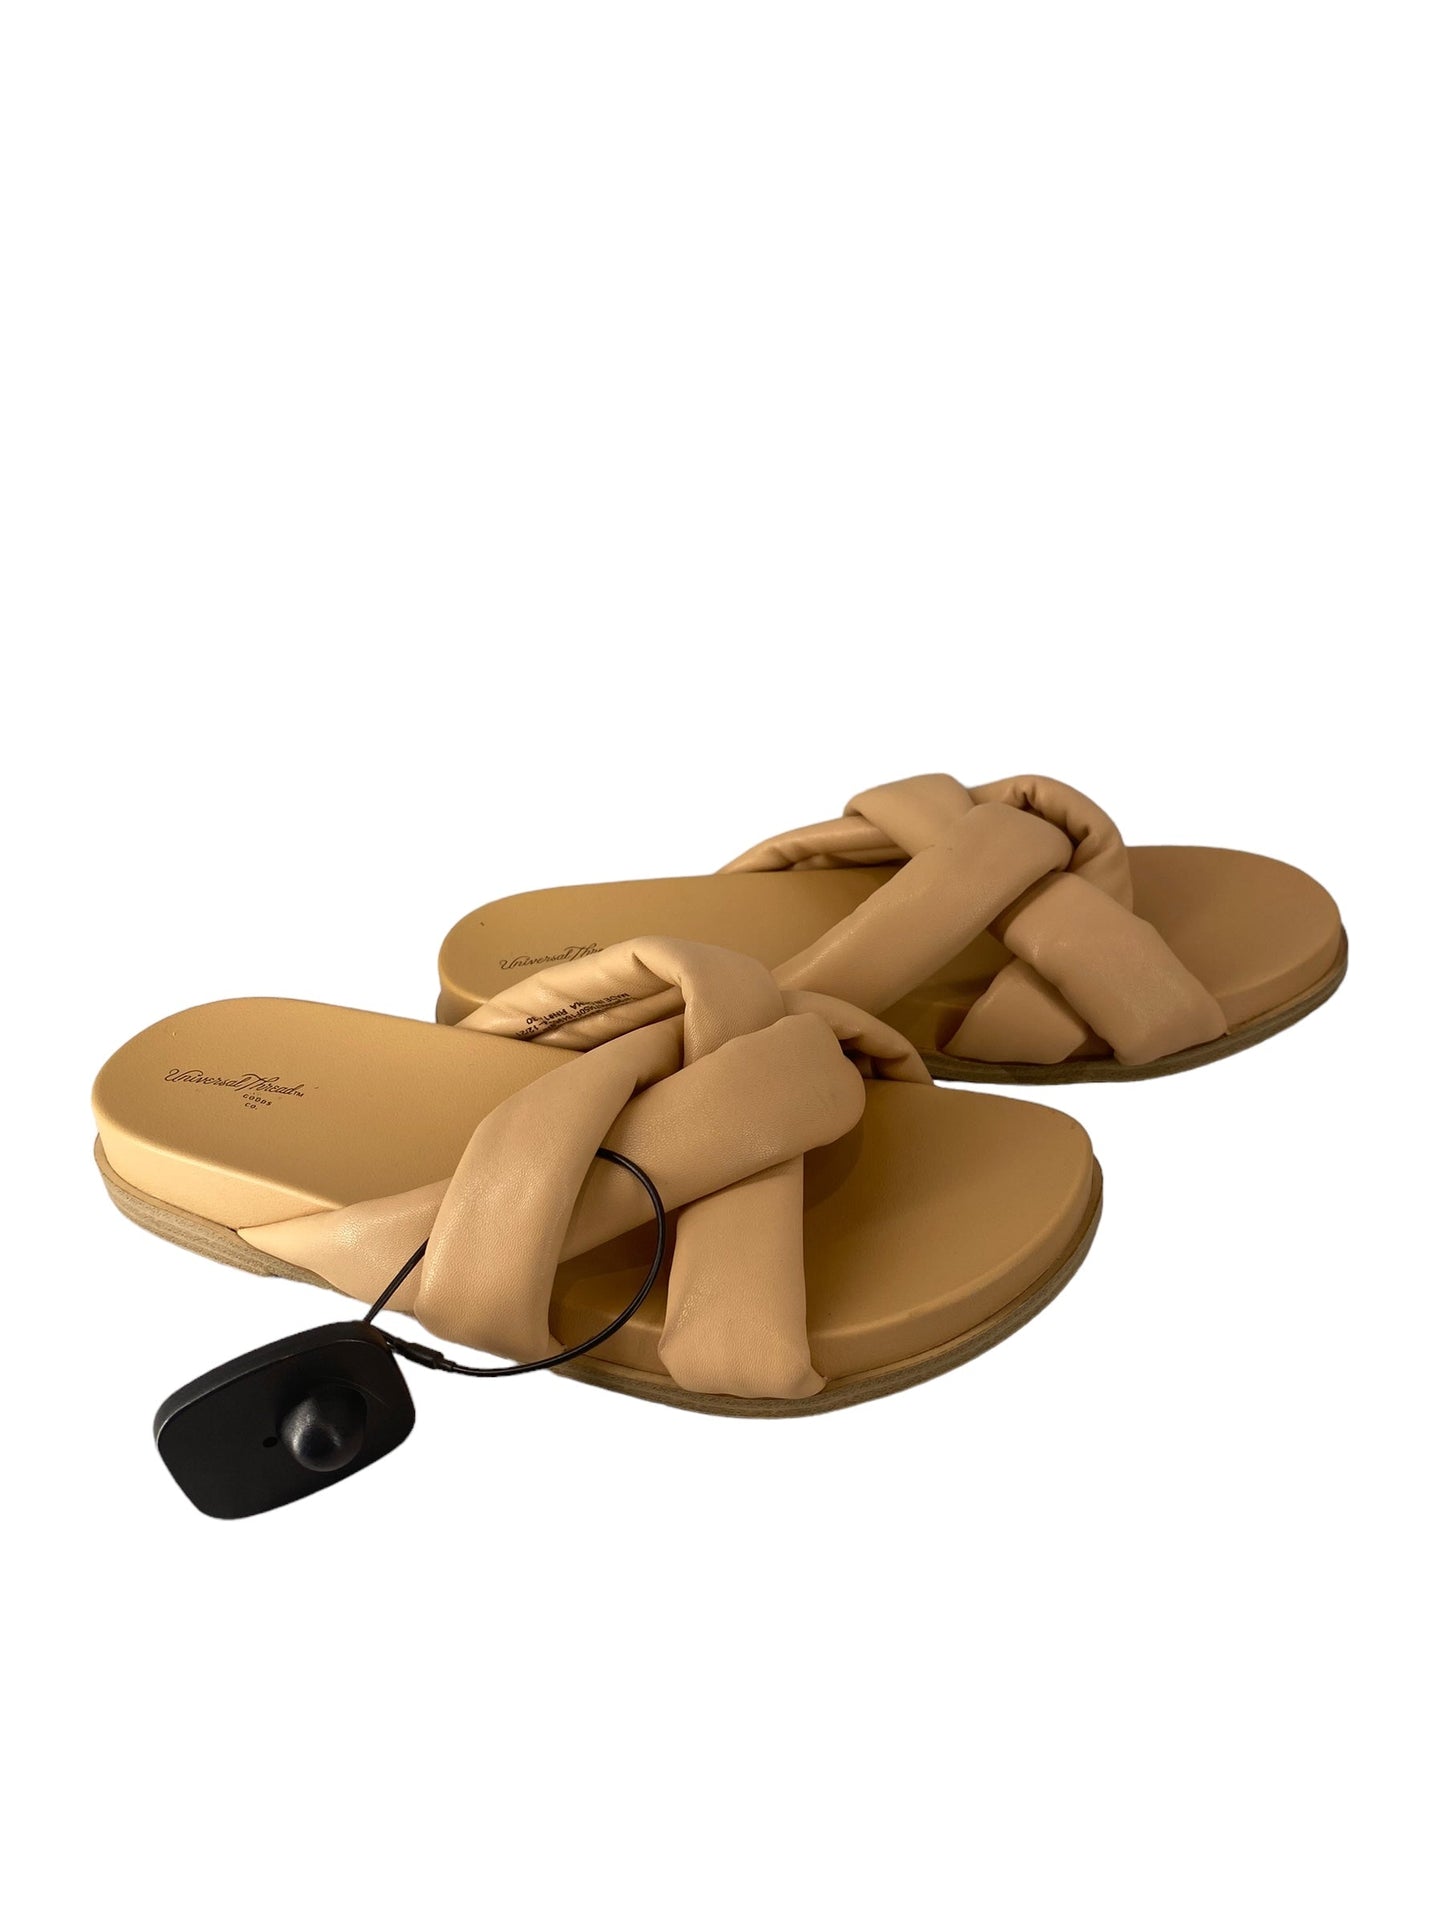 Tan Sandals Flats Universal Thread, Size 8